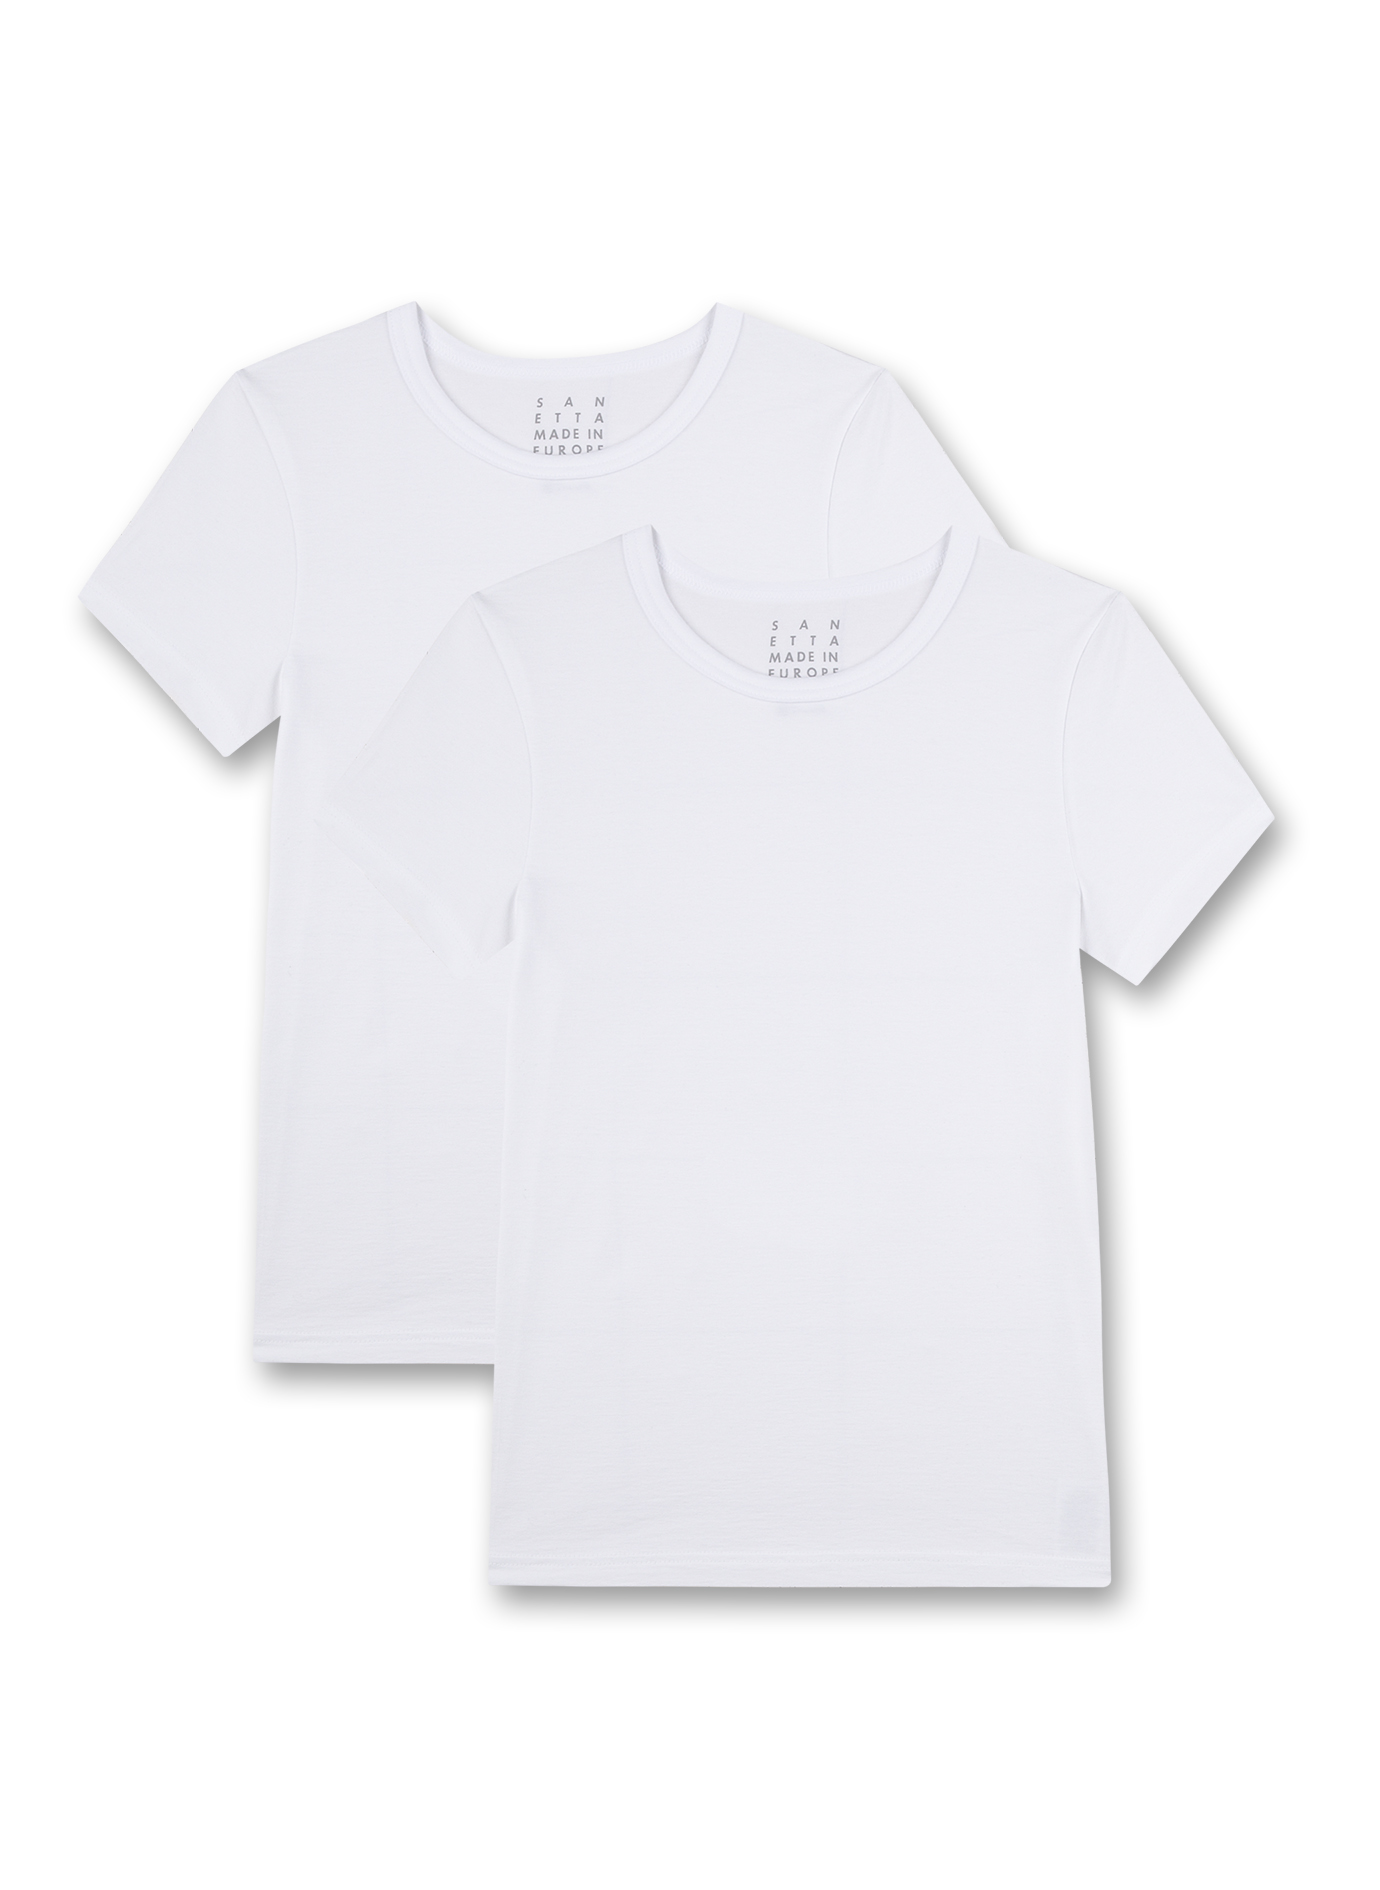 Unisex-Unterhemd kurzarm (Doppelpack) Weiß